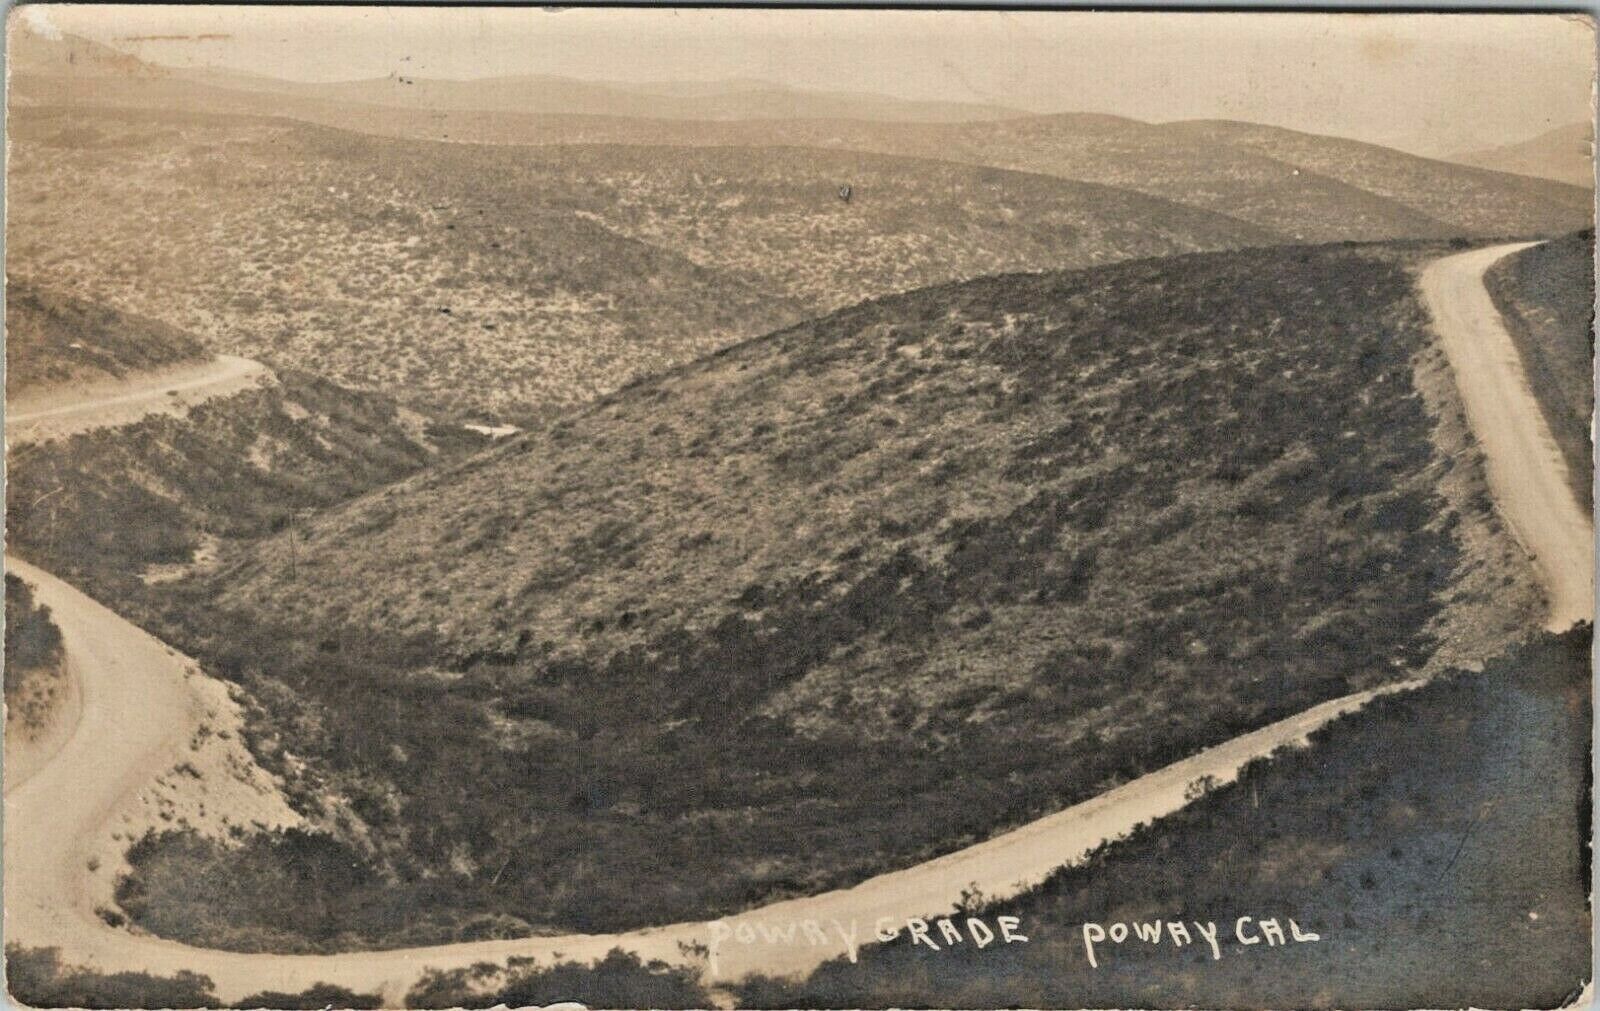 c1910 Poway Grade Poway California Real Photo Sepia Postcard